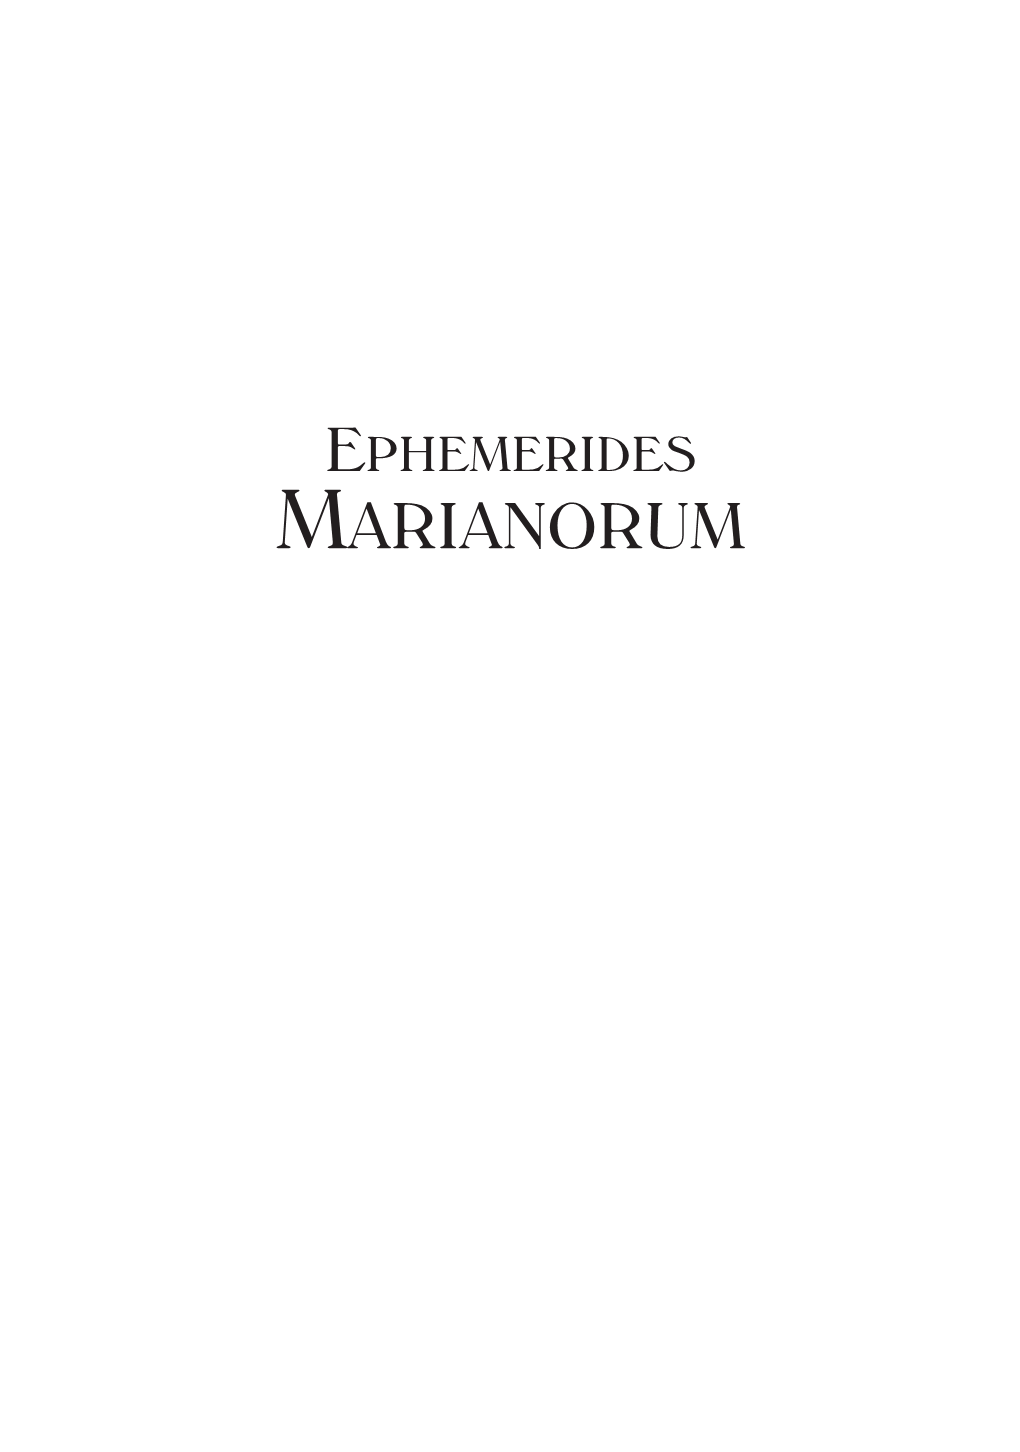 Epheremides Marianorum 3(2014)